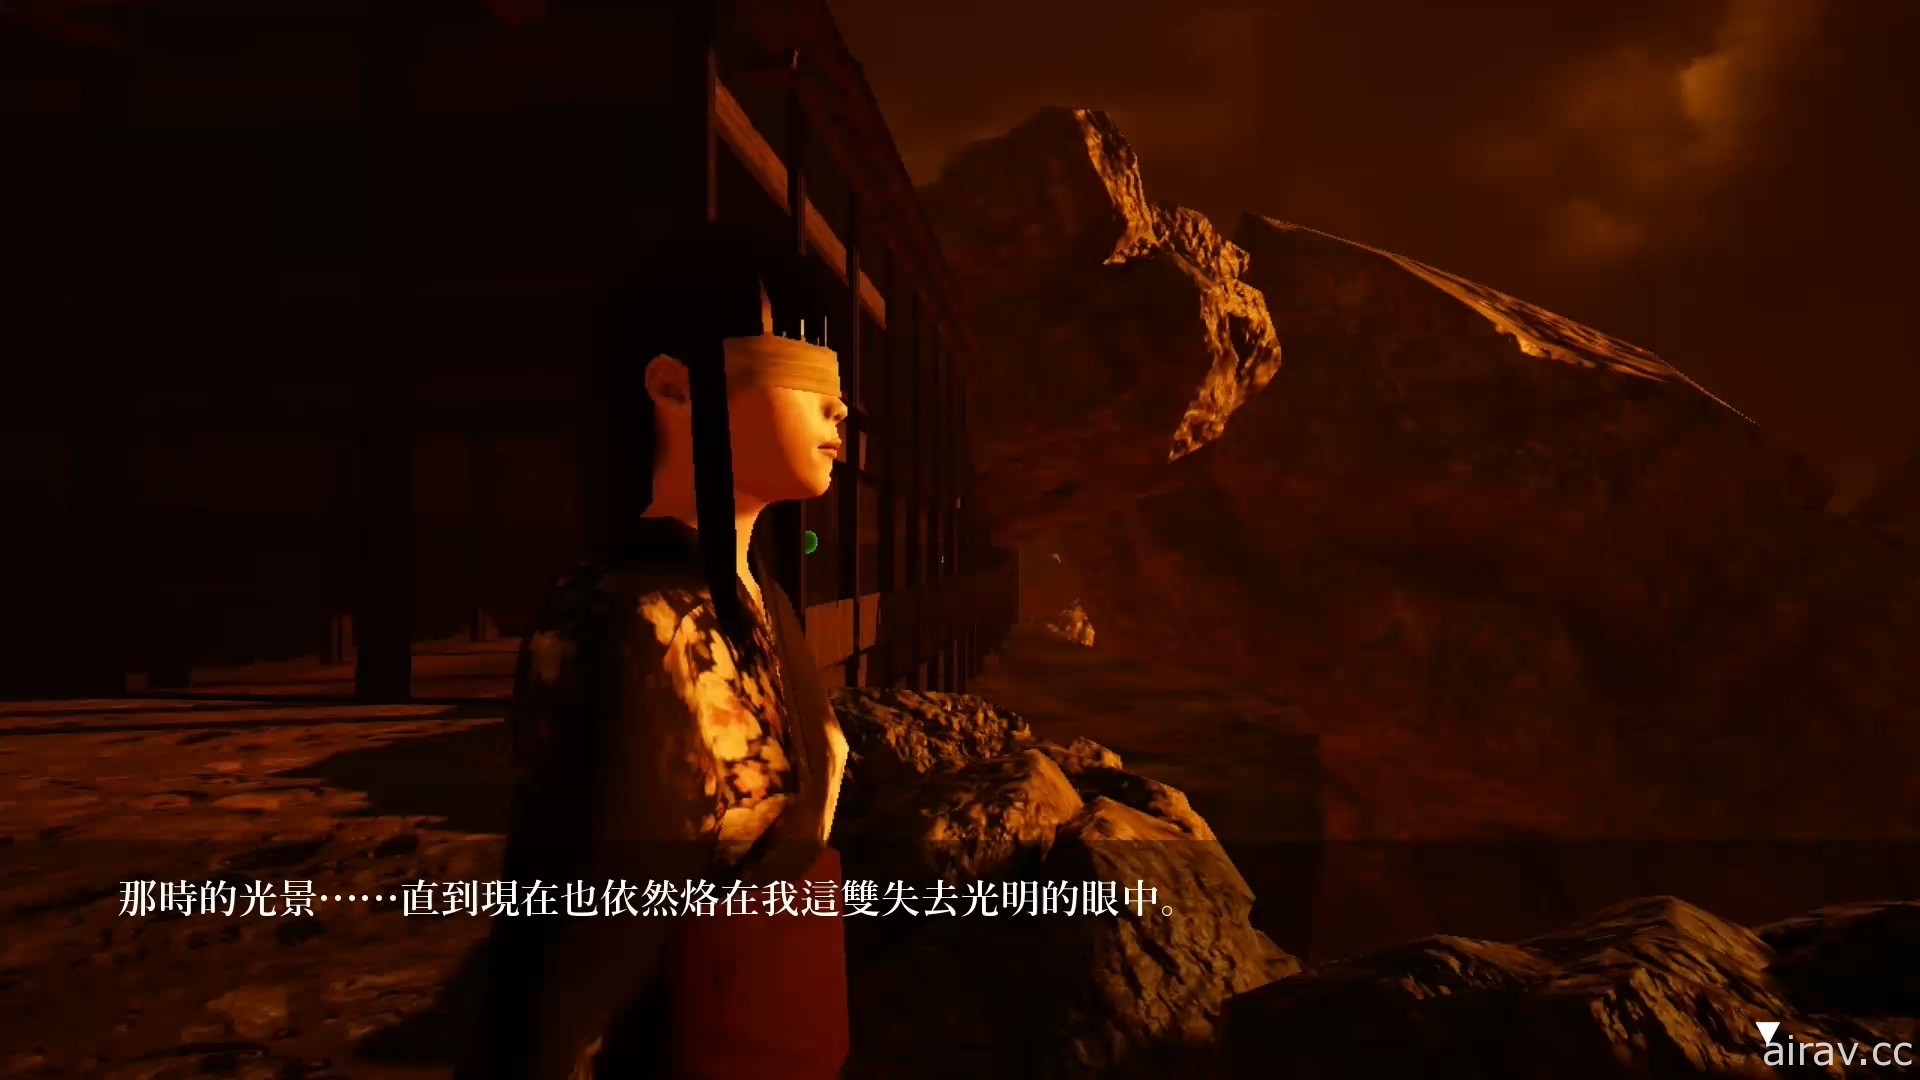 动作惊悚游戏《影之回廊 Shadow Corridor》PS4 繁体中文数位版今天上市